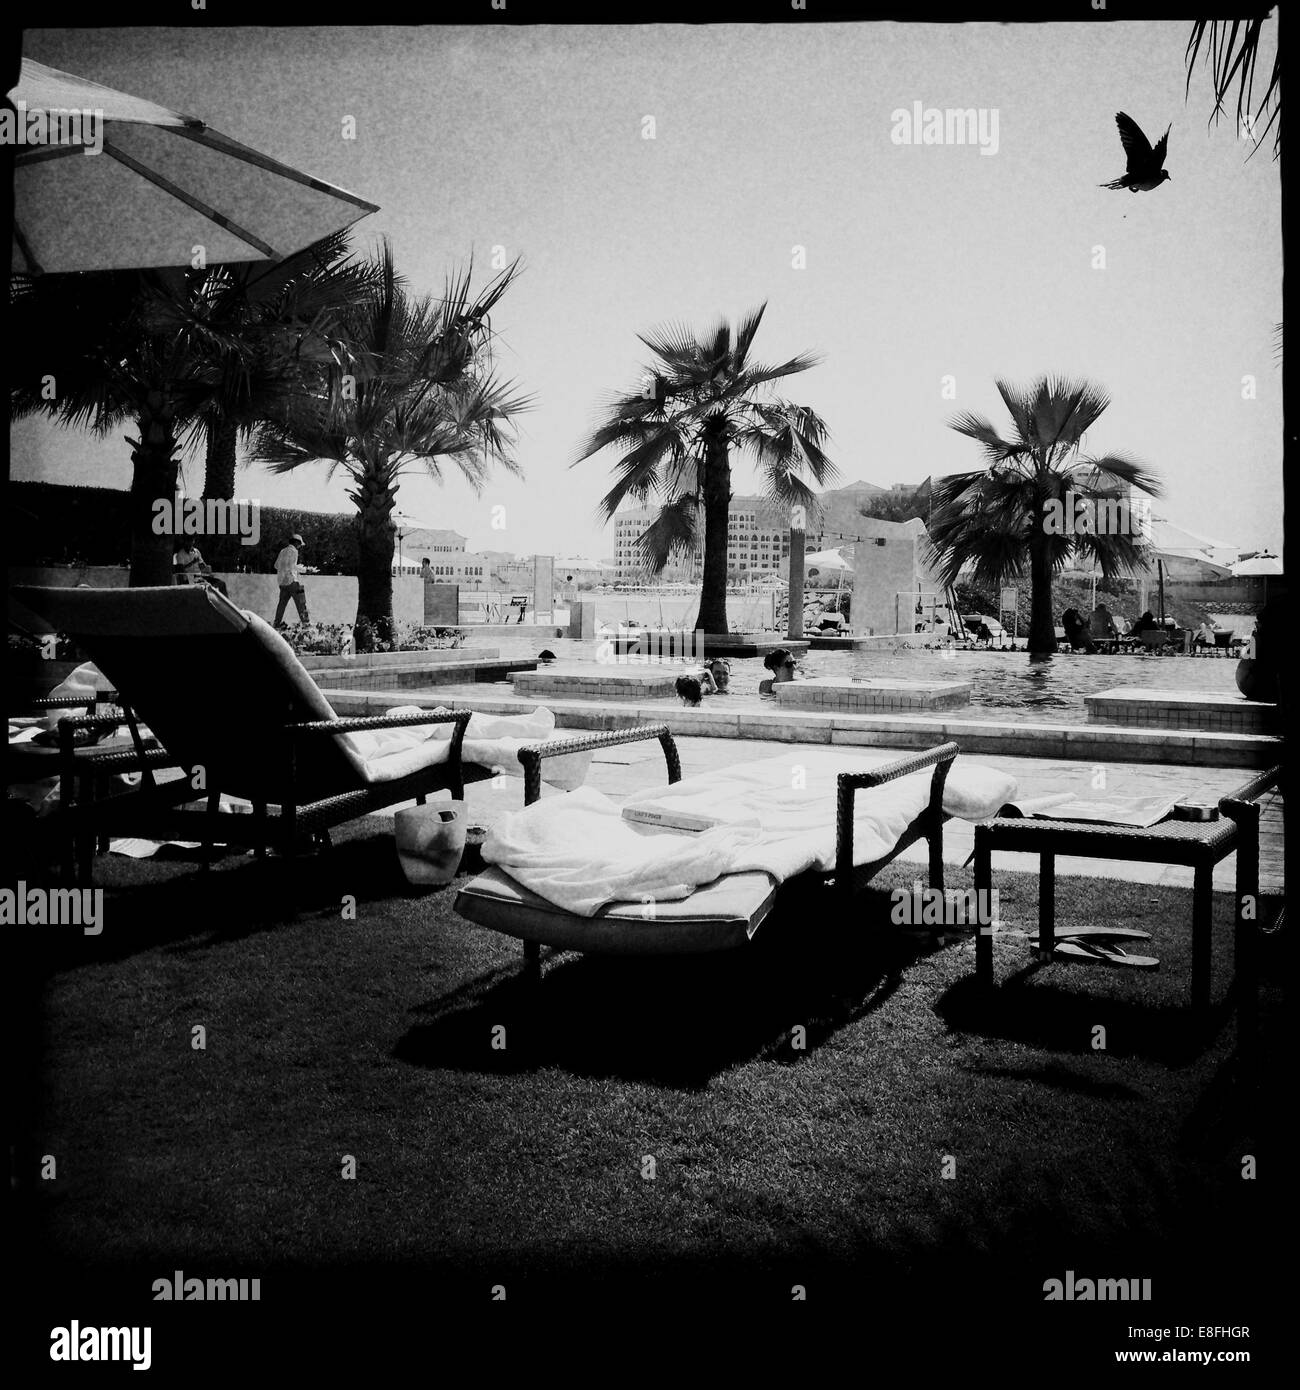 Emirats arabes unis, Abu Dhabi, scène de la piscine et d'oiseau Banque D'Images